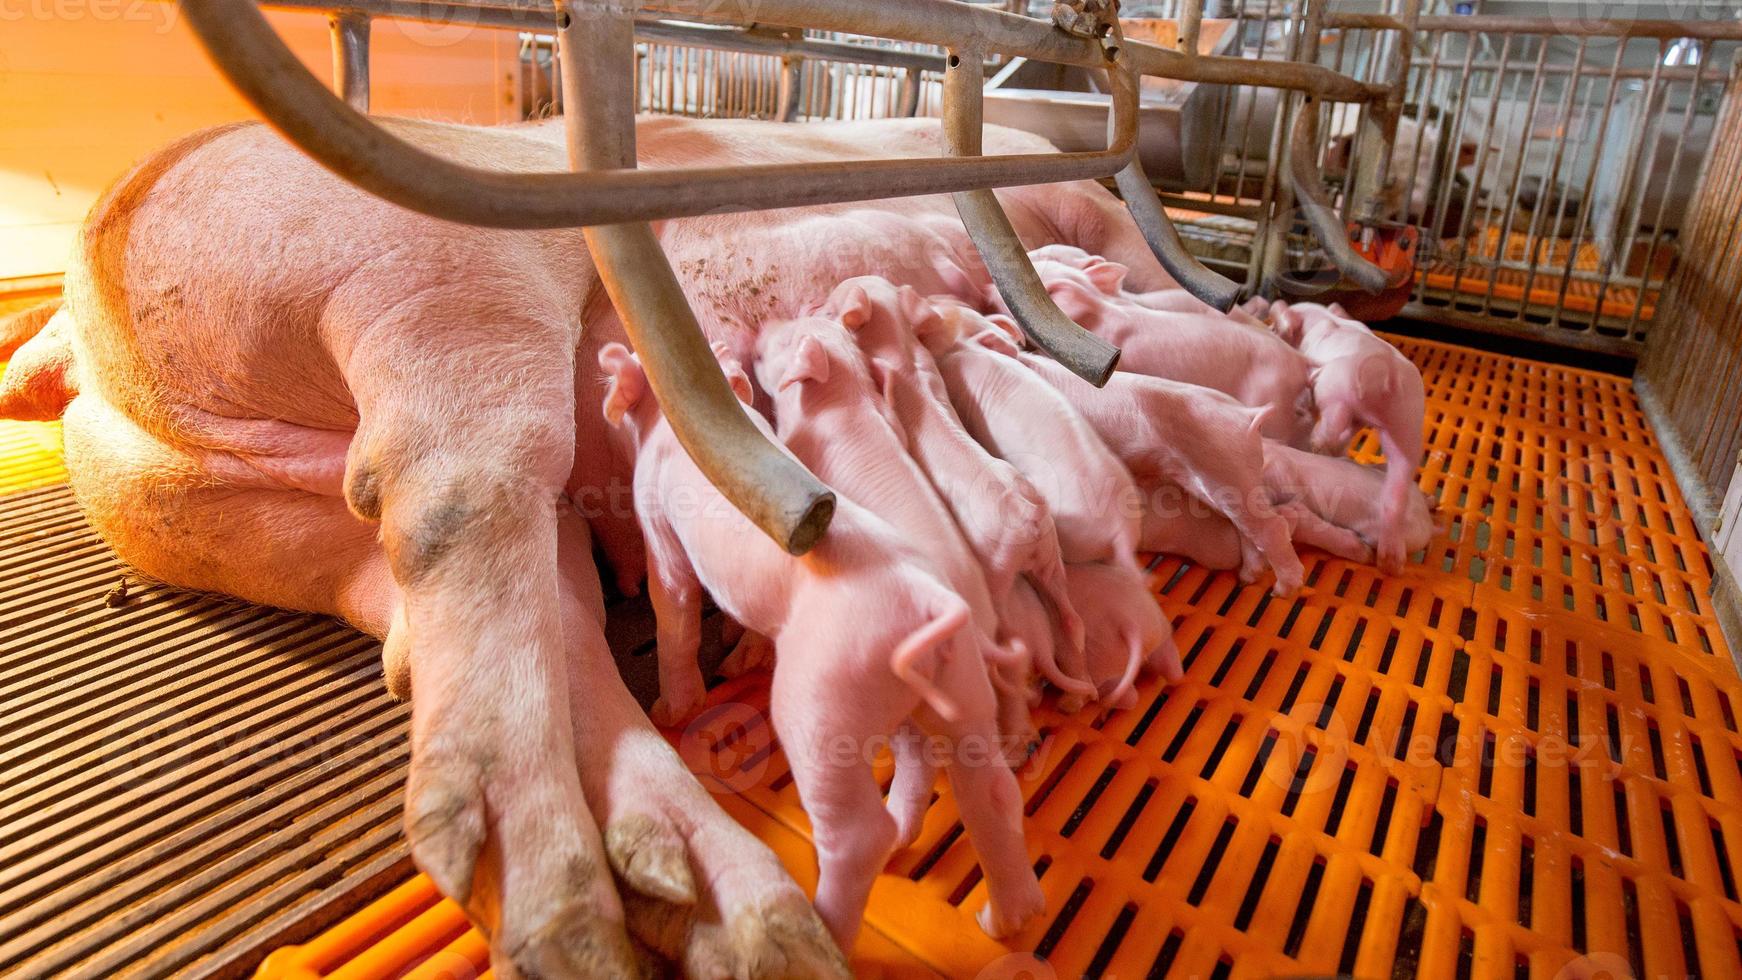 granja de cría de cerdos en el negocio porcino en una granja de vivienda interior ordenada y limpia, con lechones de alimentación de la madre porcina foto